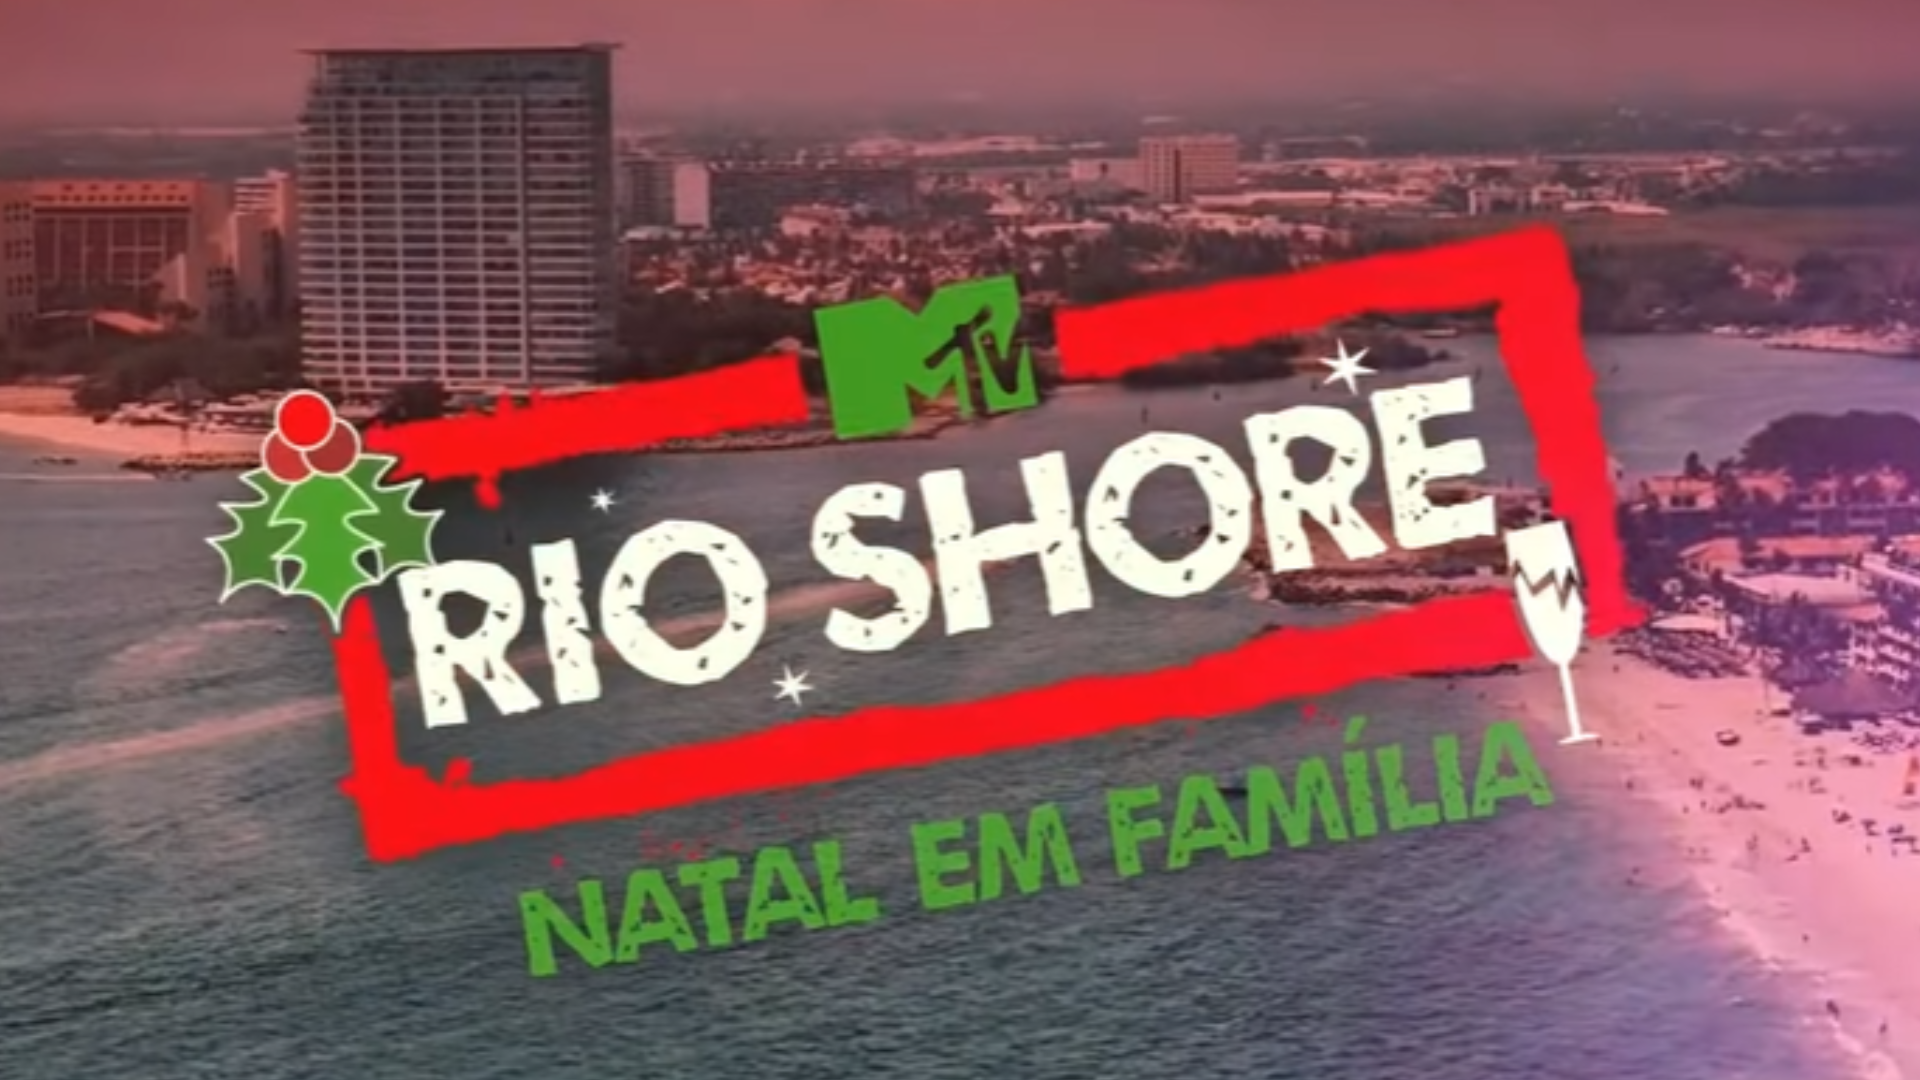 Rio Shore